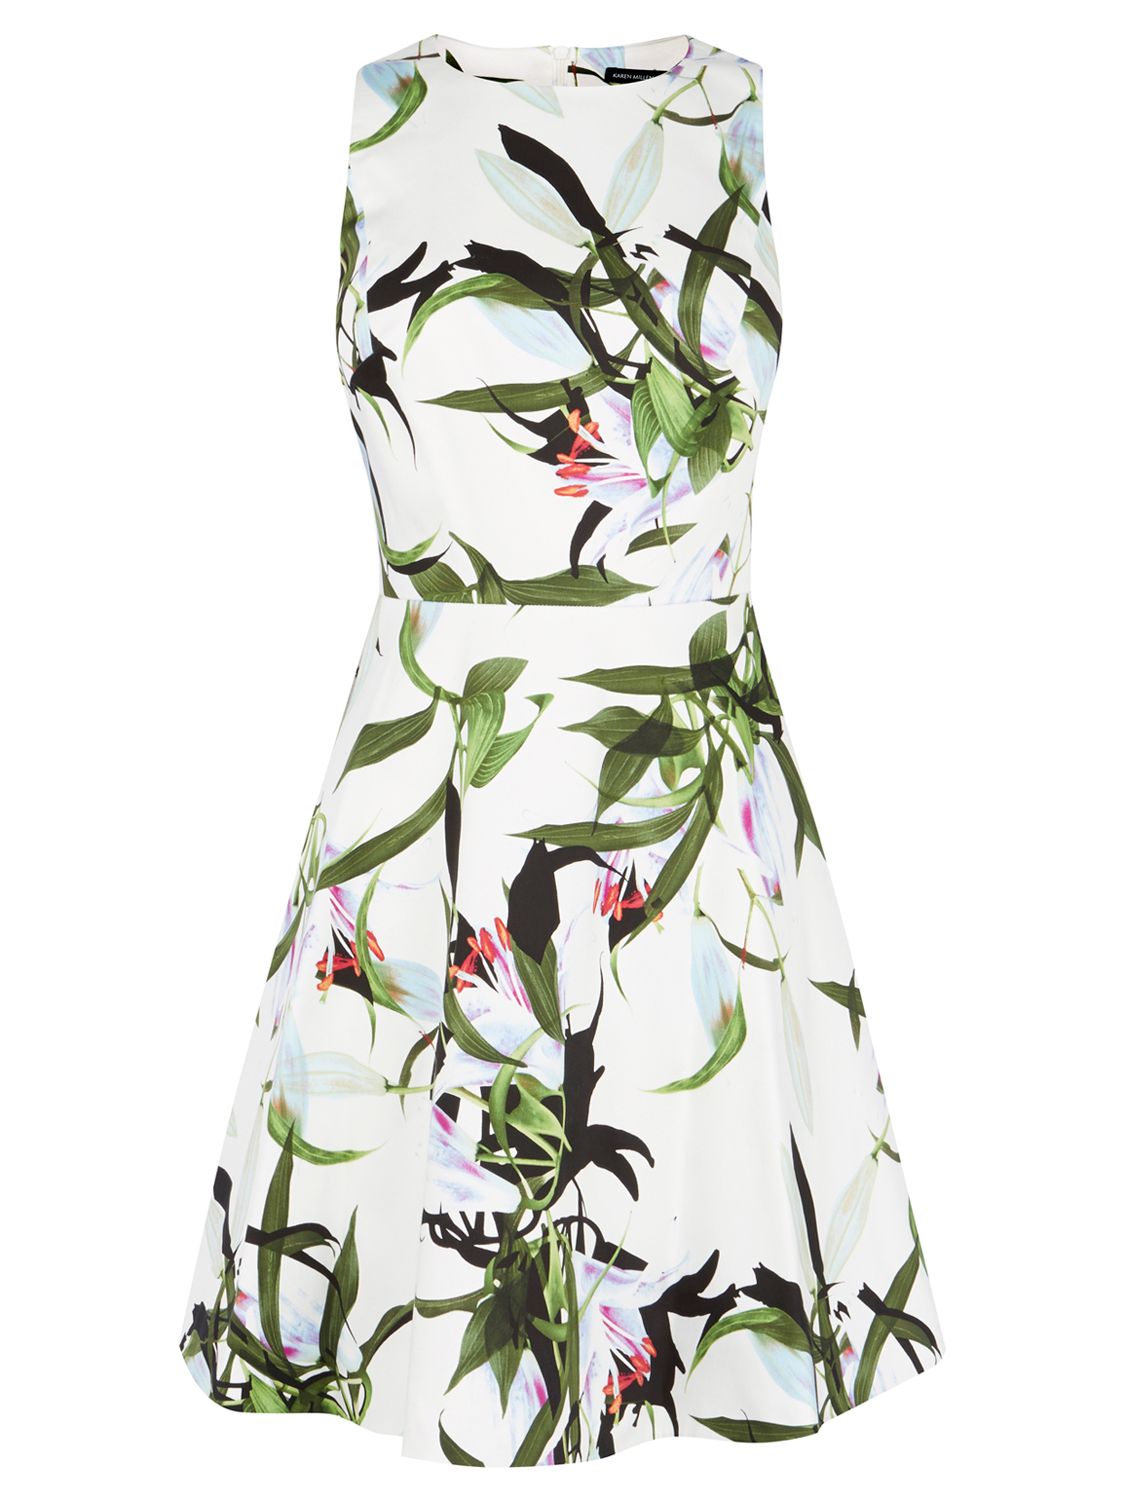 Karen Millen Tropical Lily Print Dress, White/Multi